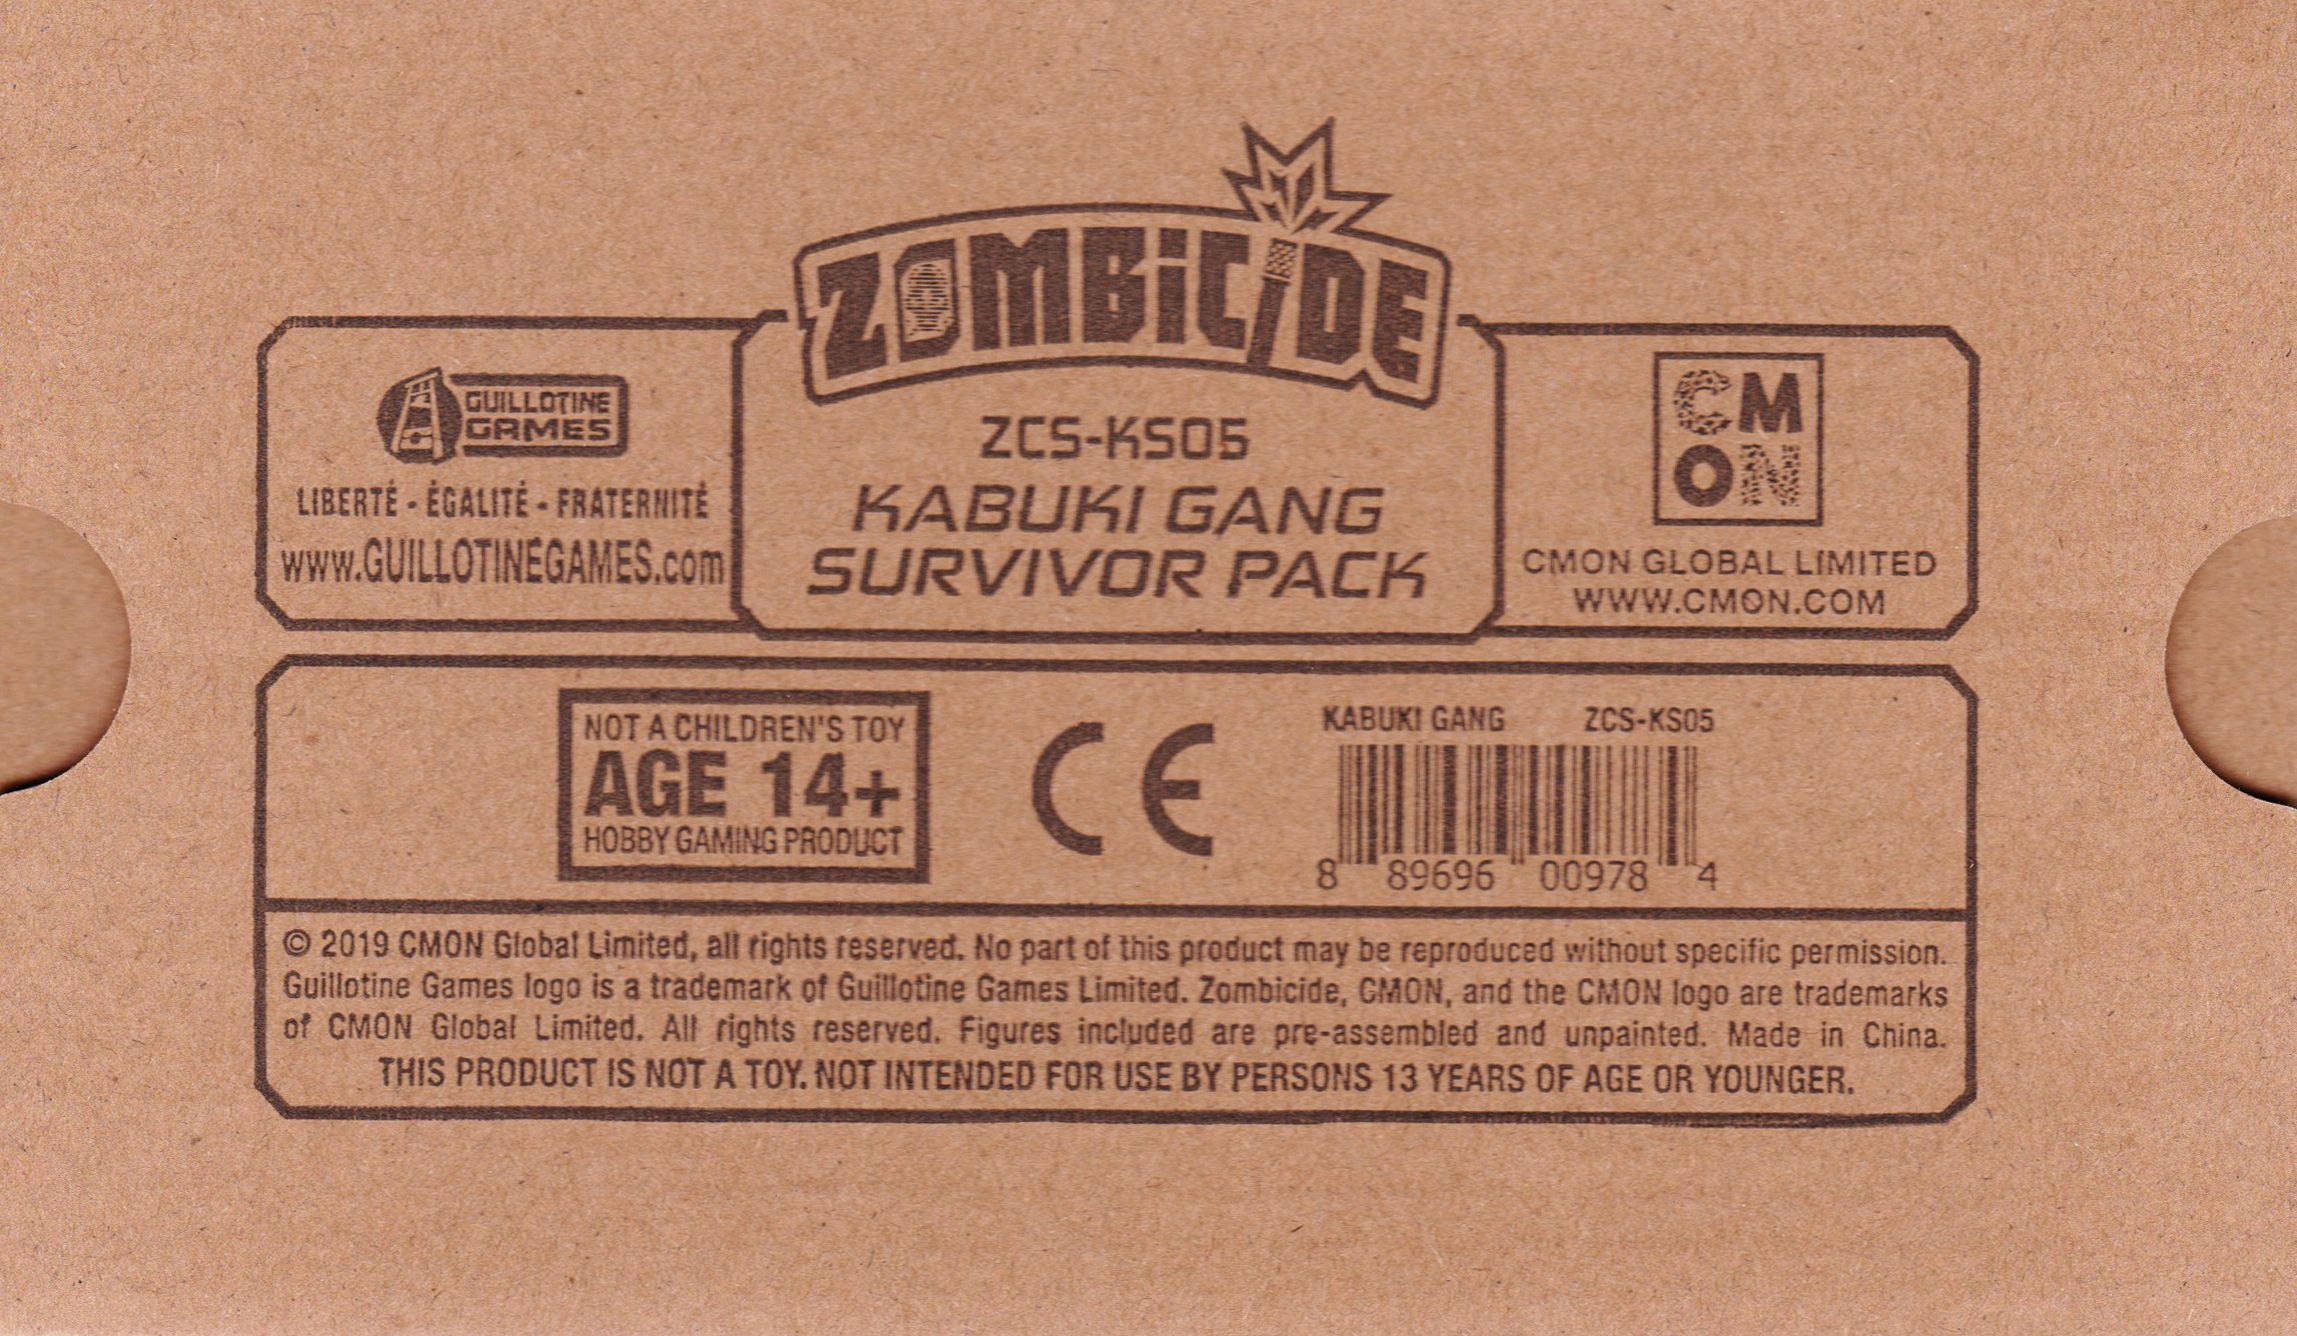 Zombicide: Invader – Kabuki Gang Survivor Pack